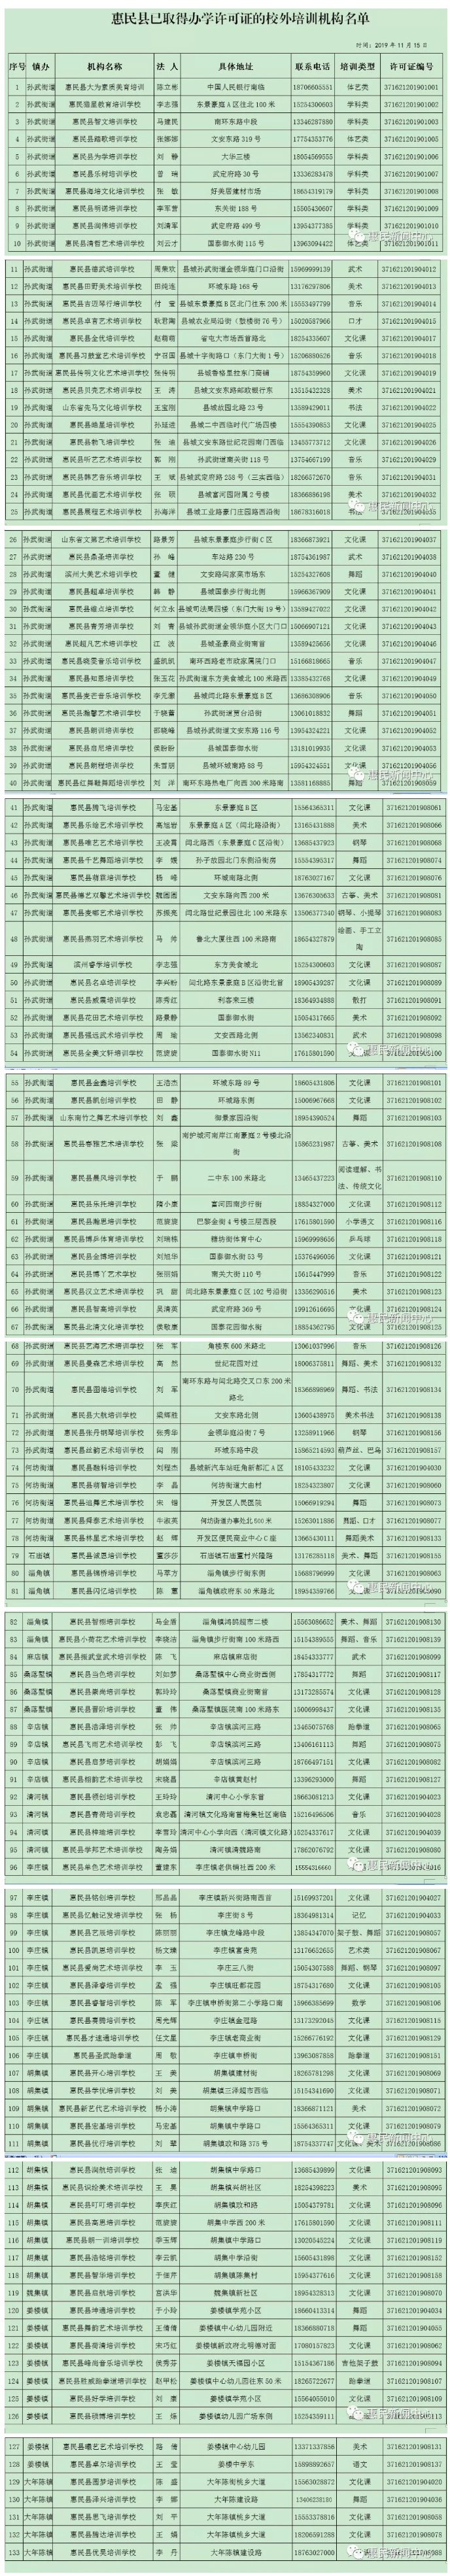 关于惠民县已取得办学许可证的校外培训机构名单的公示.jpg